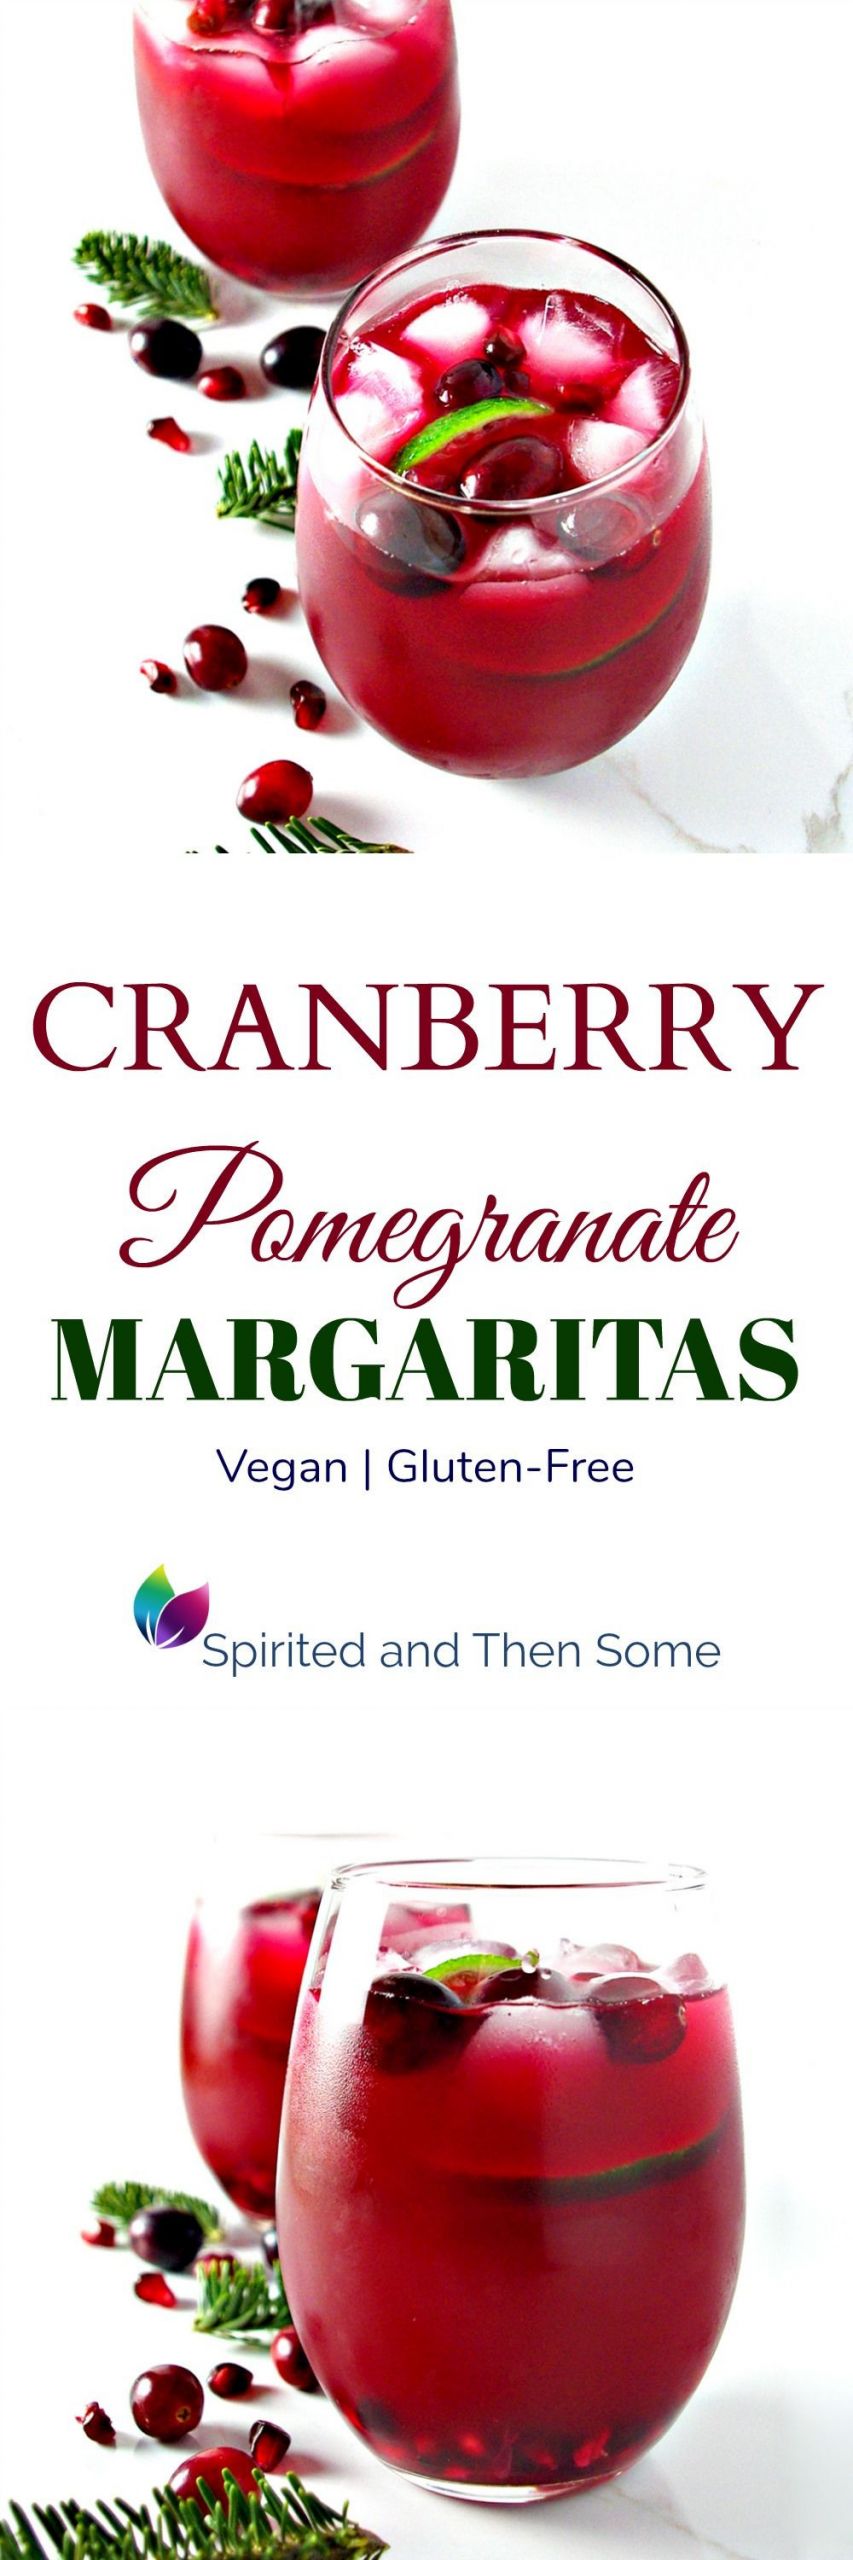 Margaritas Gluten Free
 Cranberry Pomegranate Margaritas Recipe